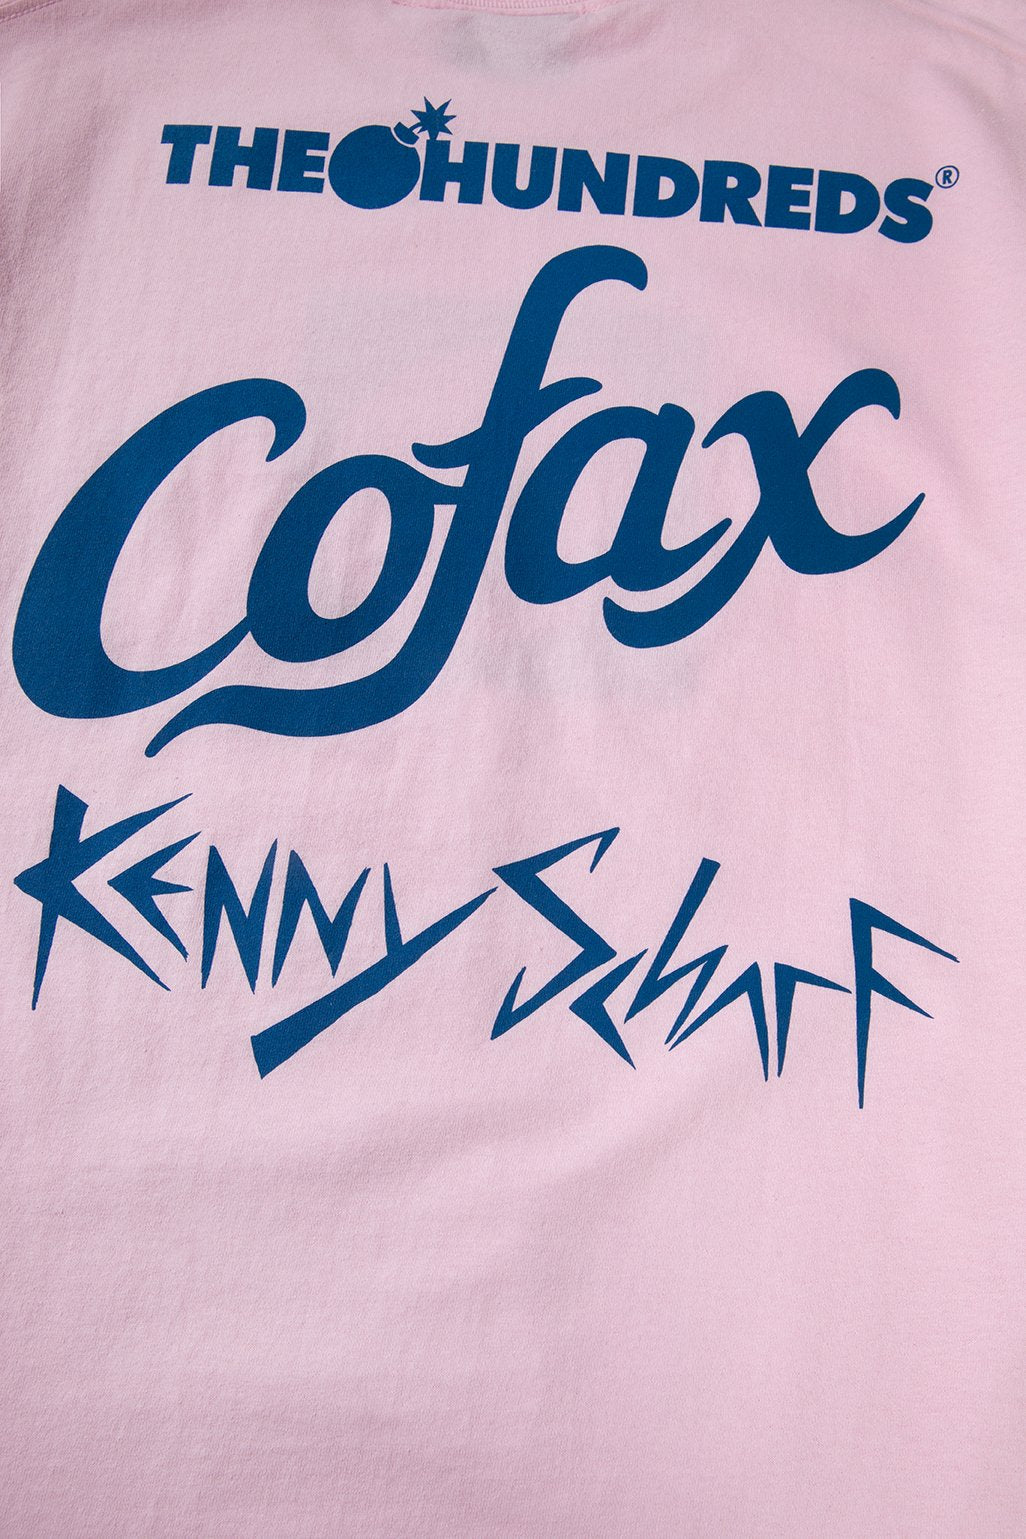 Cofax X Kenny Scharf X The Hundreds T-Shirt